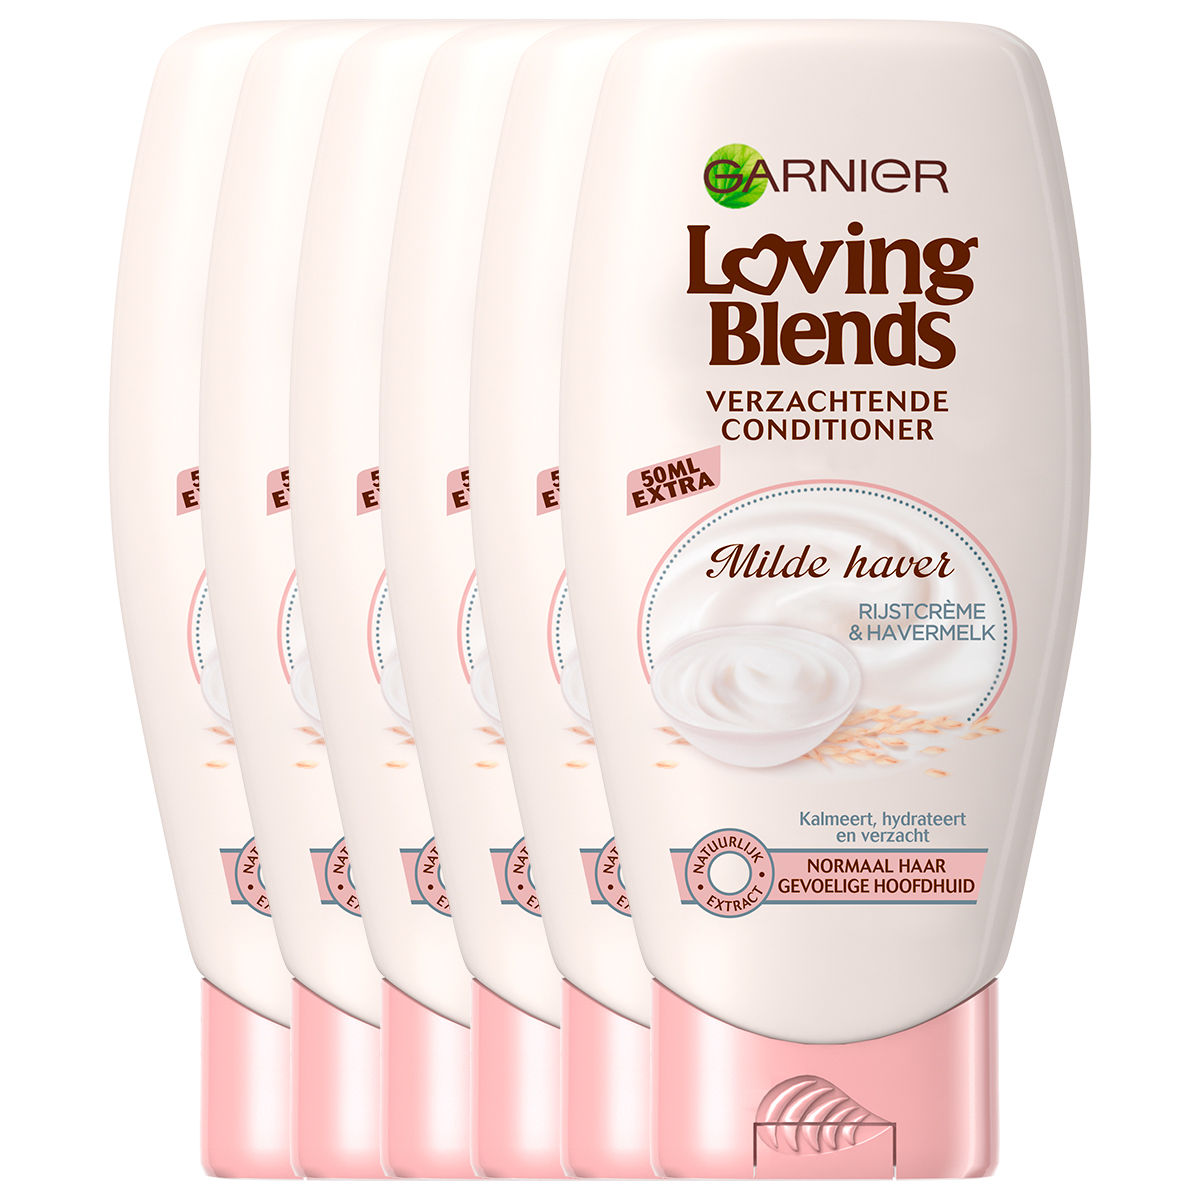 Garnier Loving Blends - Conditioner - Milde Haver - 6 x 250 ml - Normaal Haar en Gevoelige Hoofdhuid - Voordeelverpakking